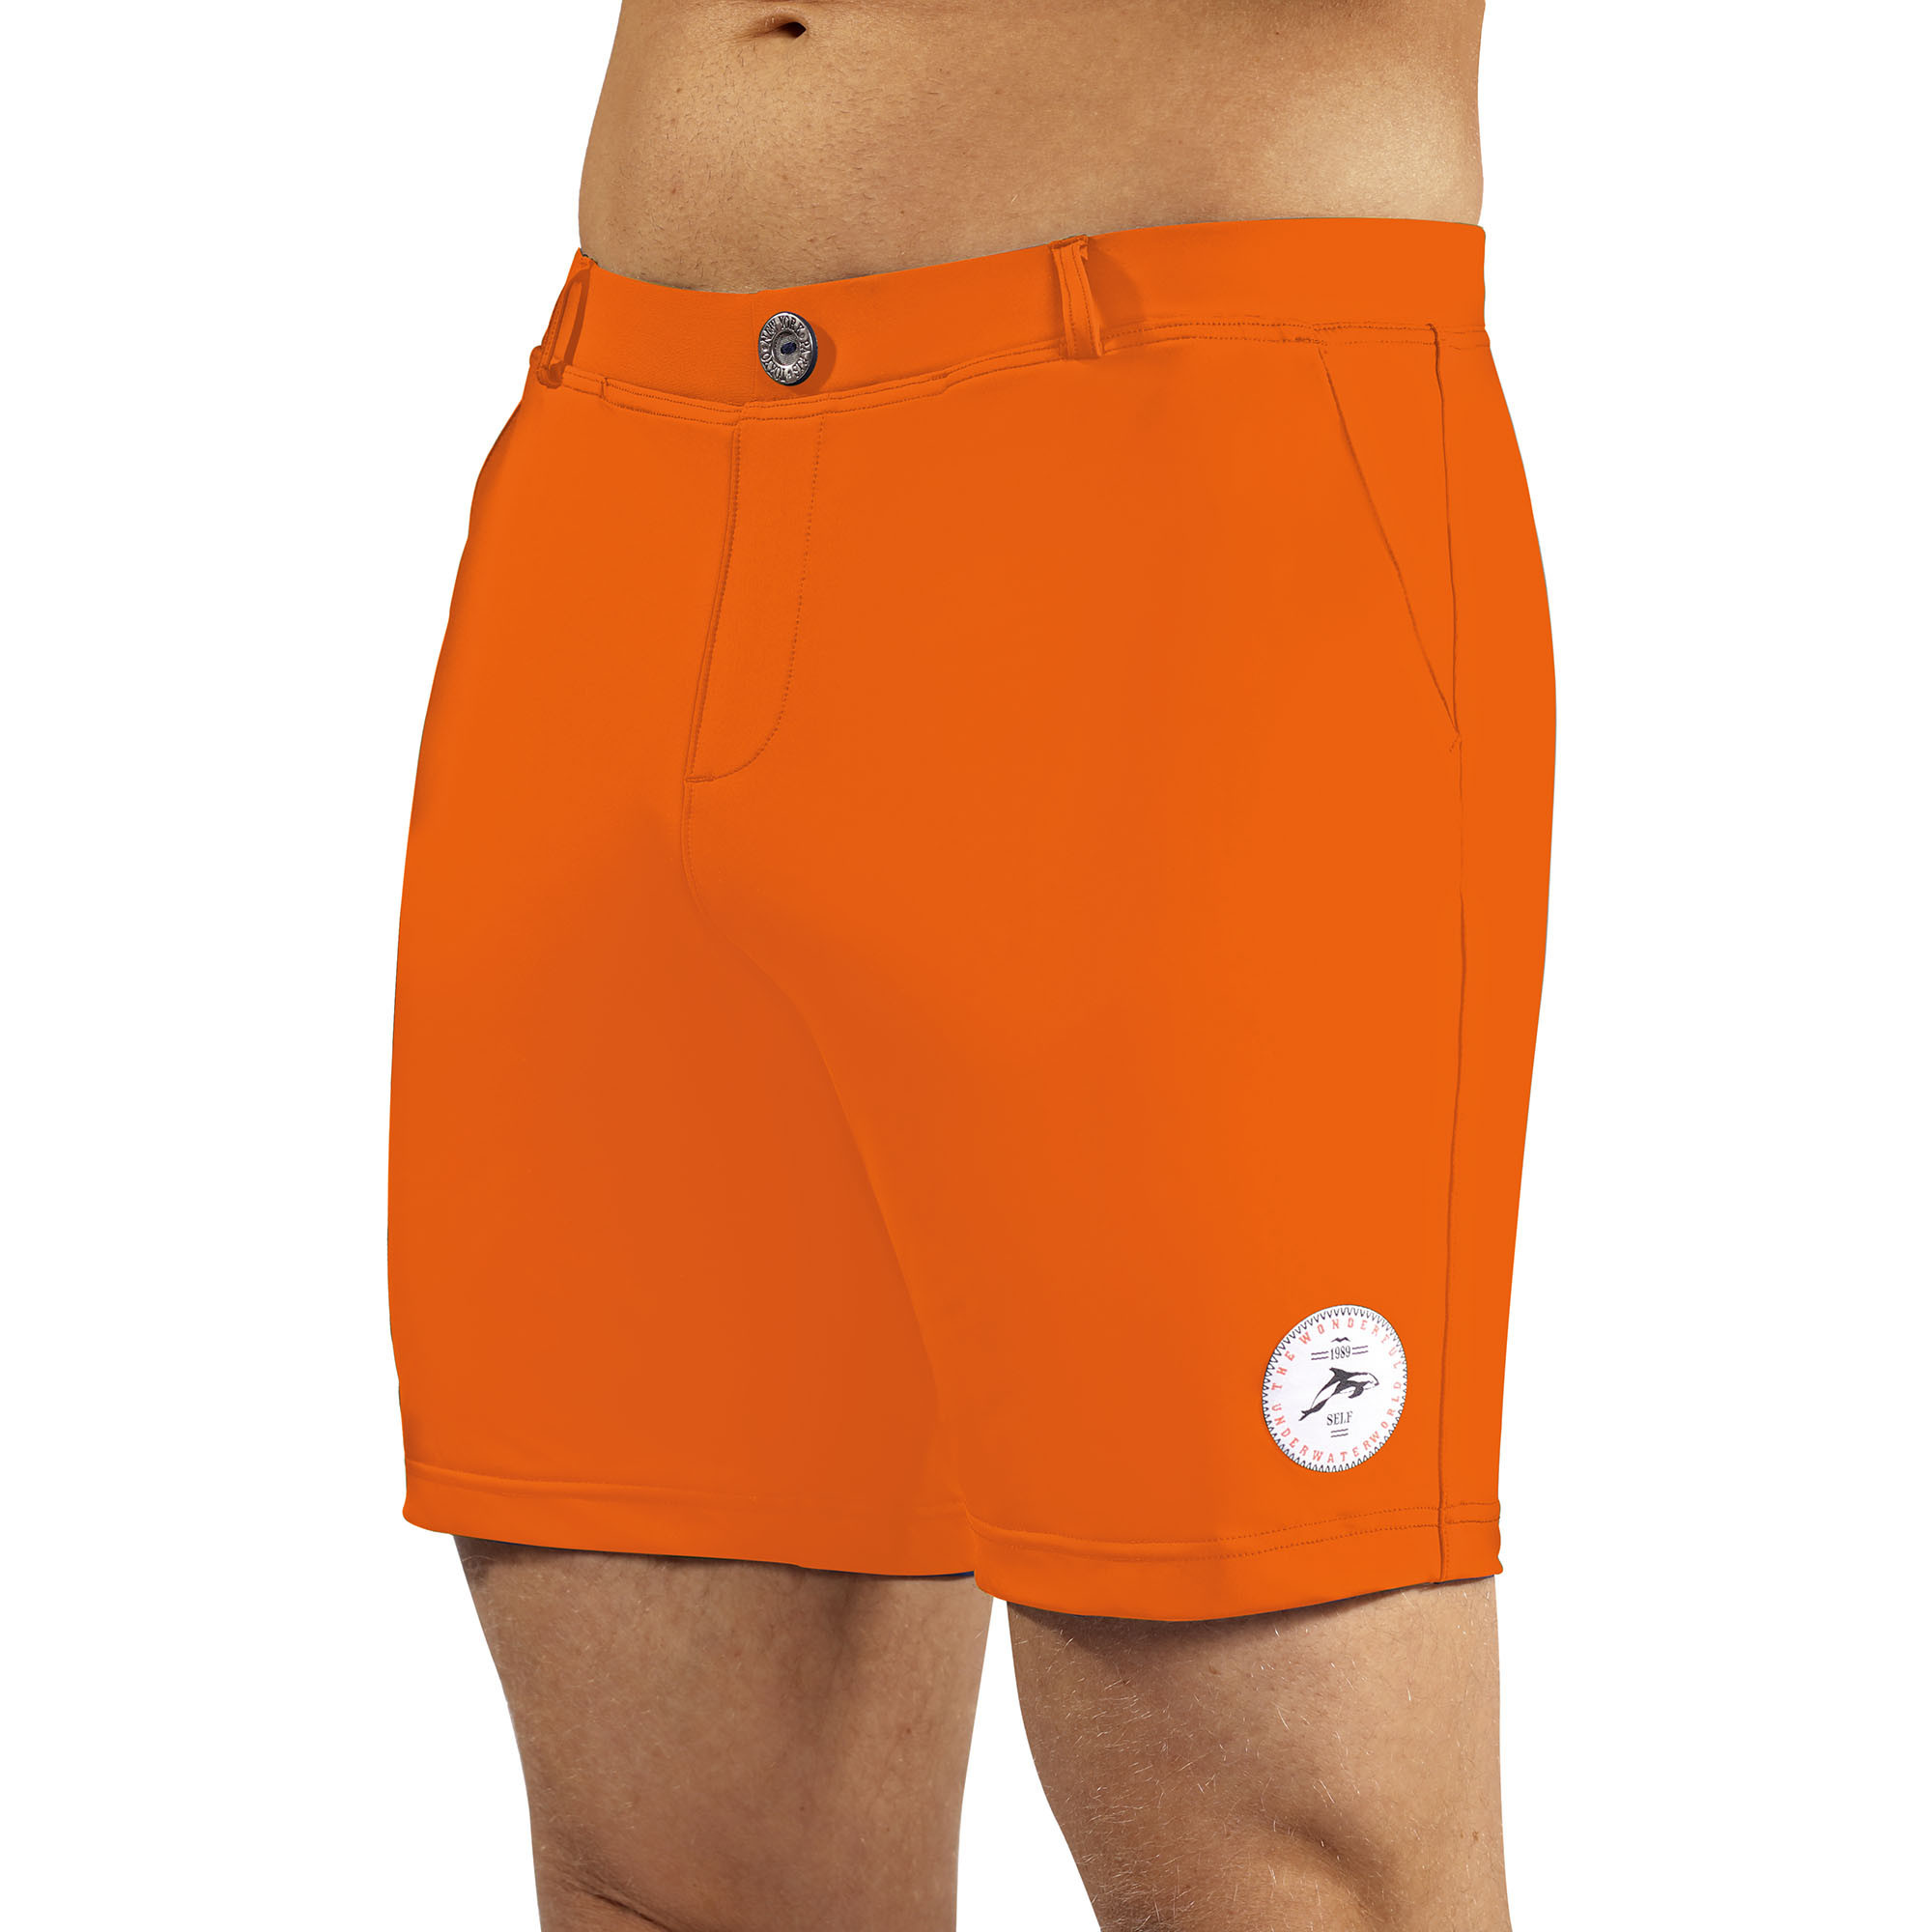 Pánské plavky Swimming shorts comfort26 oranžové - Self XL